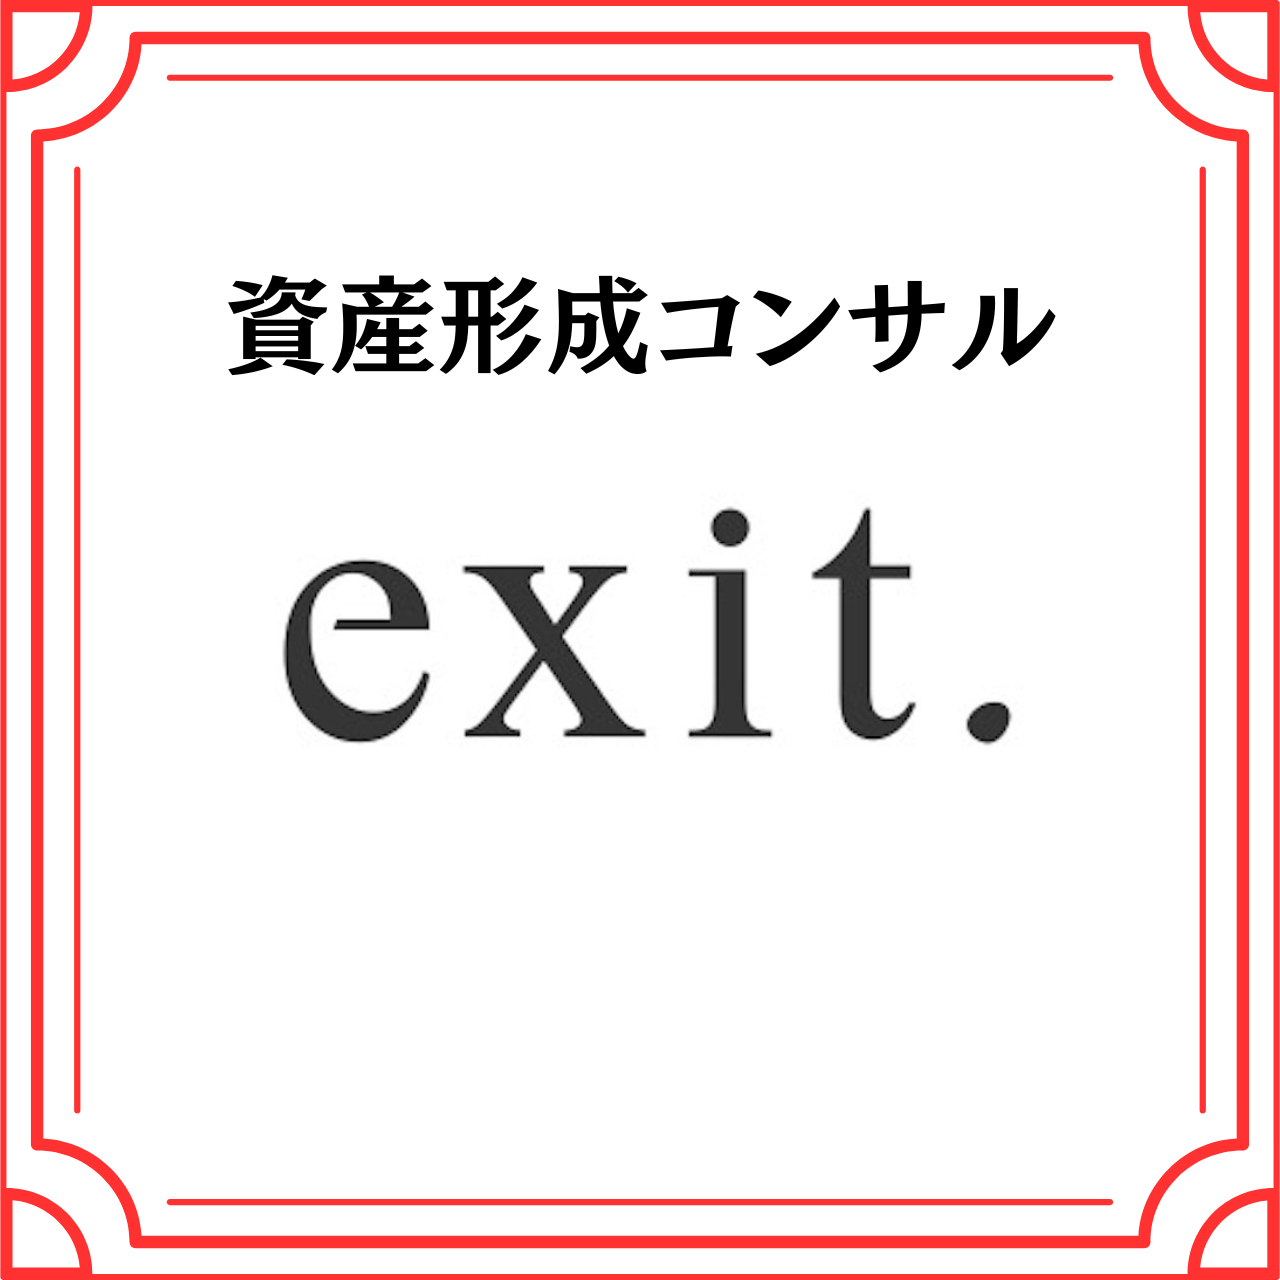 資産形成コンサル(株式会社exit.)